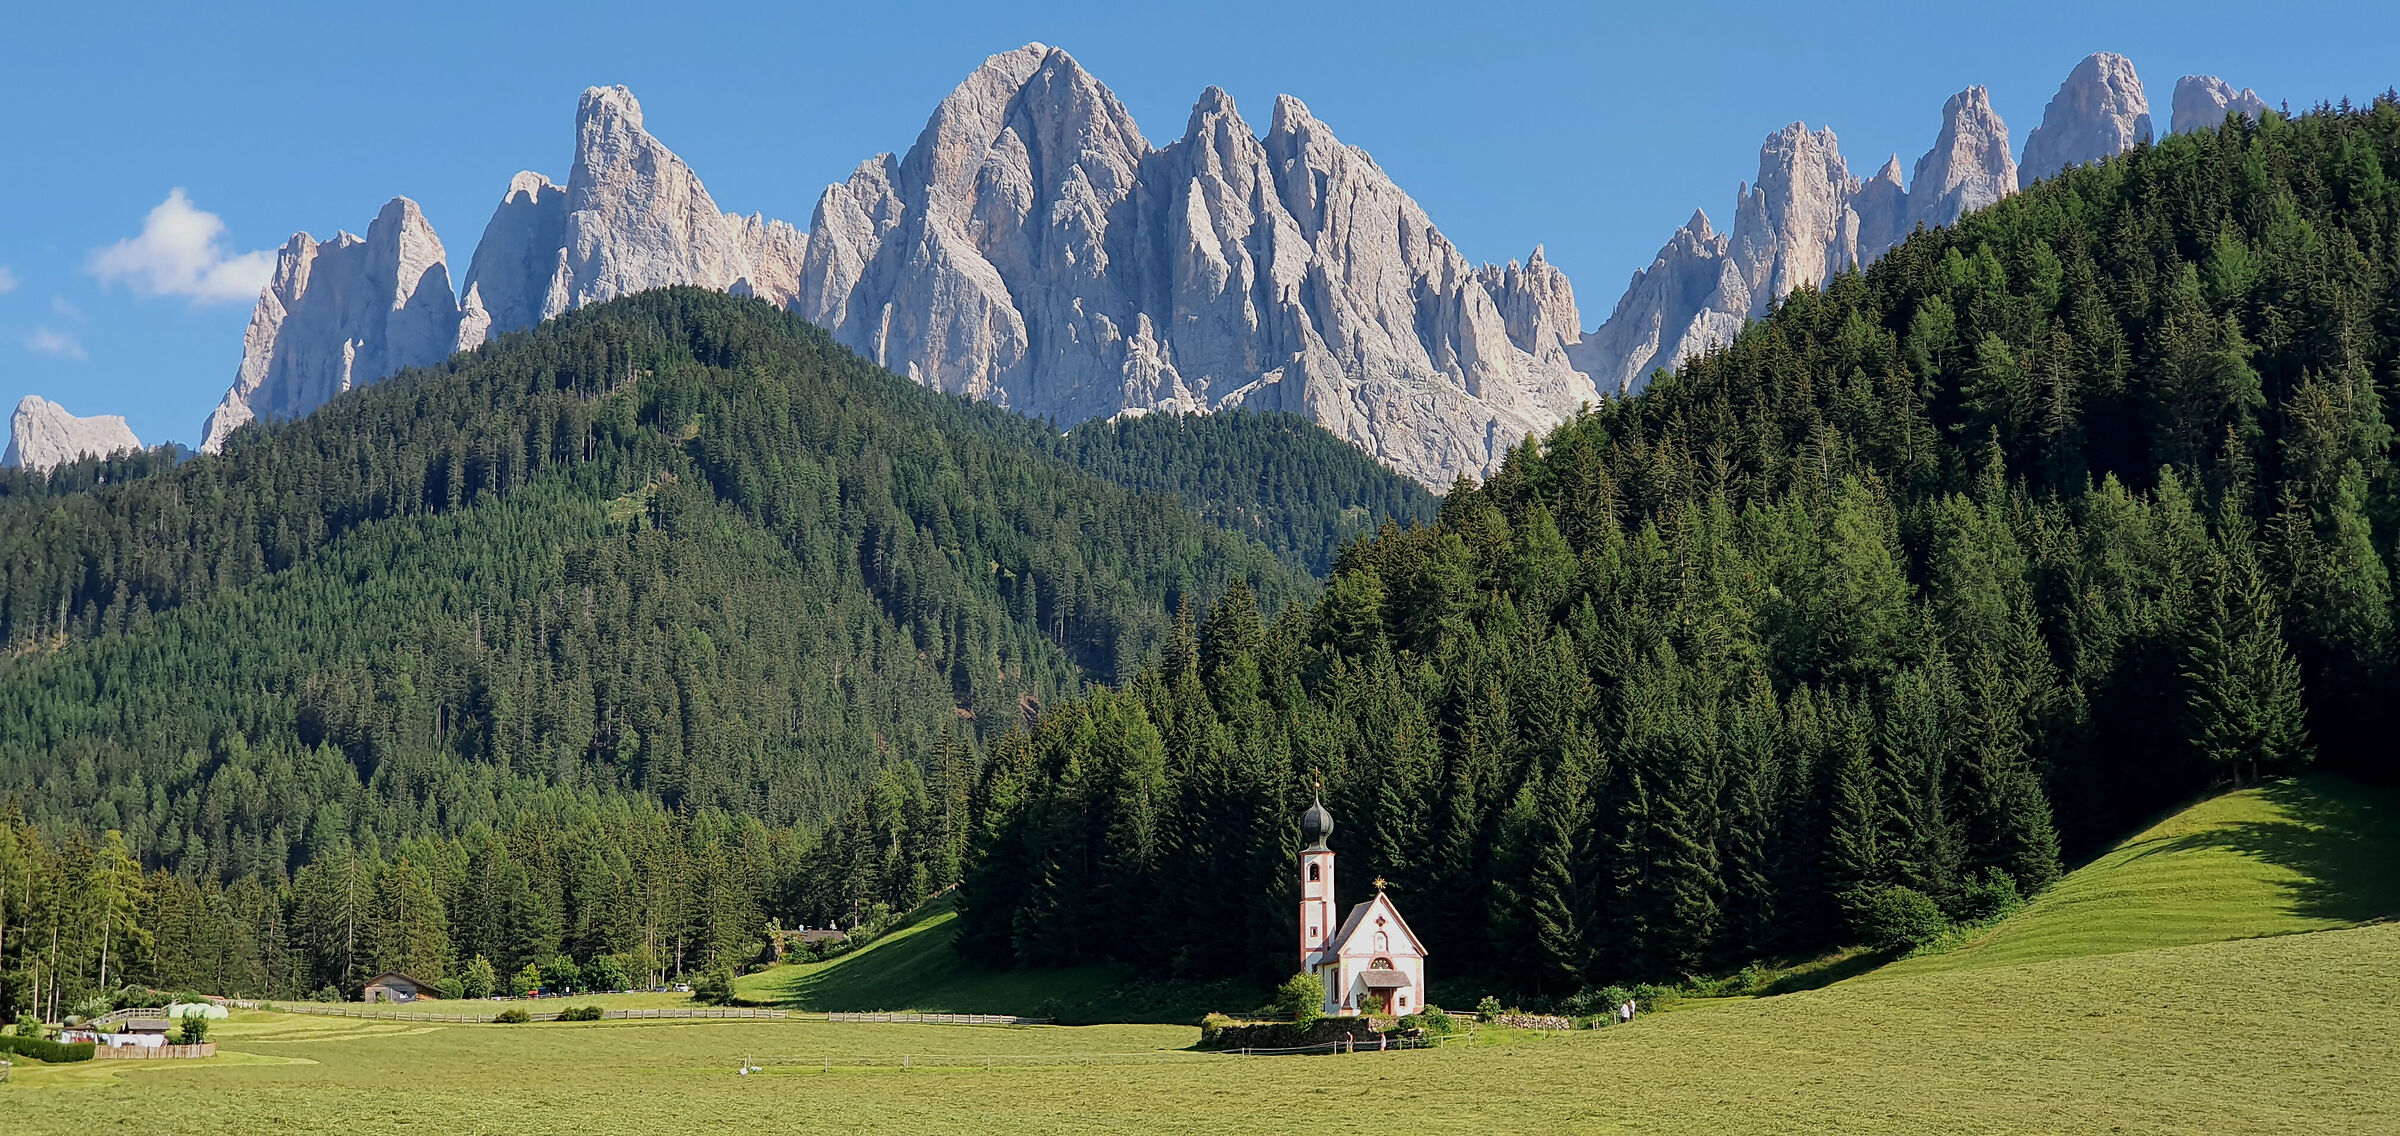 La chiesetta di Ranui, vero simbolo dell'Alto Adige...